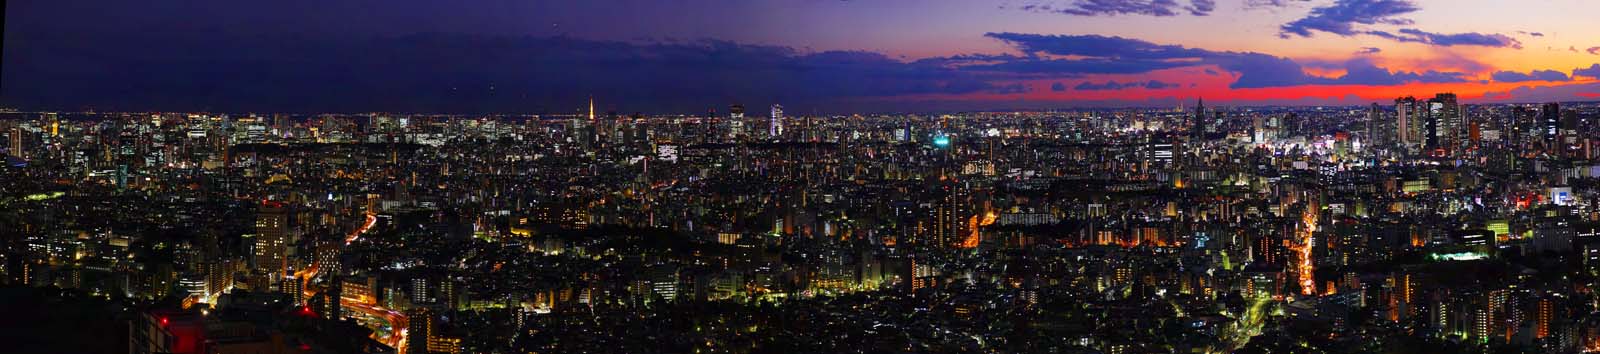 fotografia, materiale, libero il panorama, dipinga, fotografia di scorta,Panorama di Tokio, costruendo, Ikebukuro, Neon, 